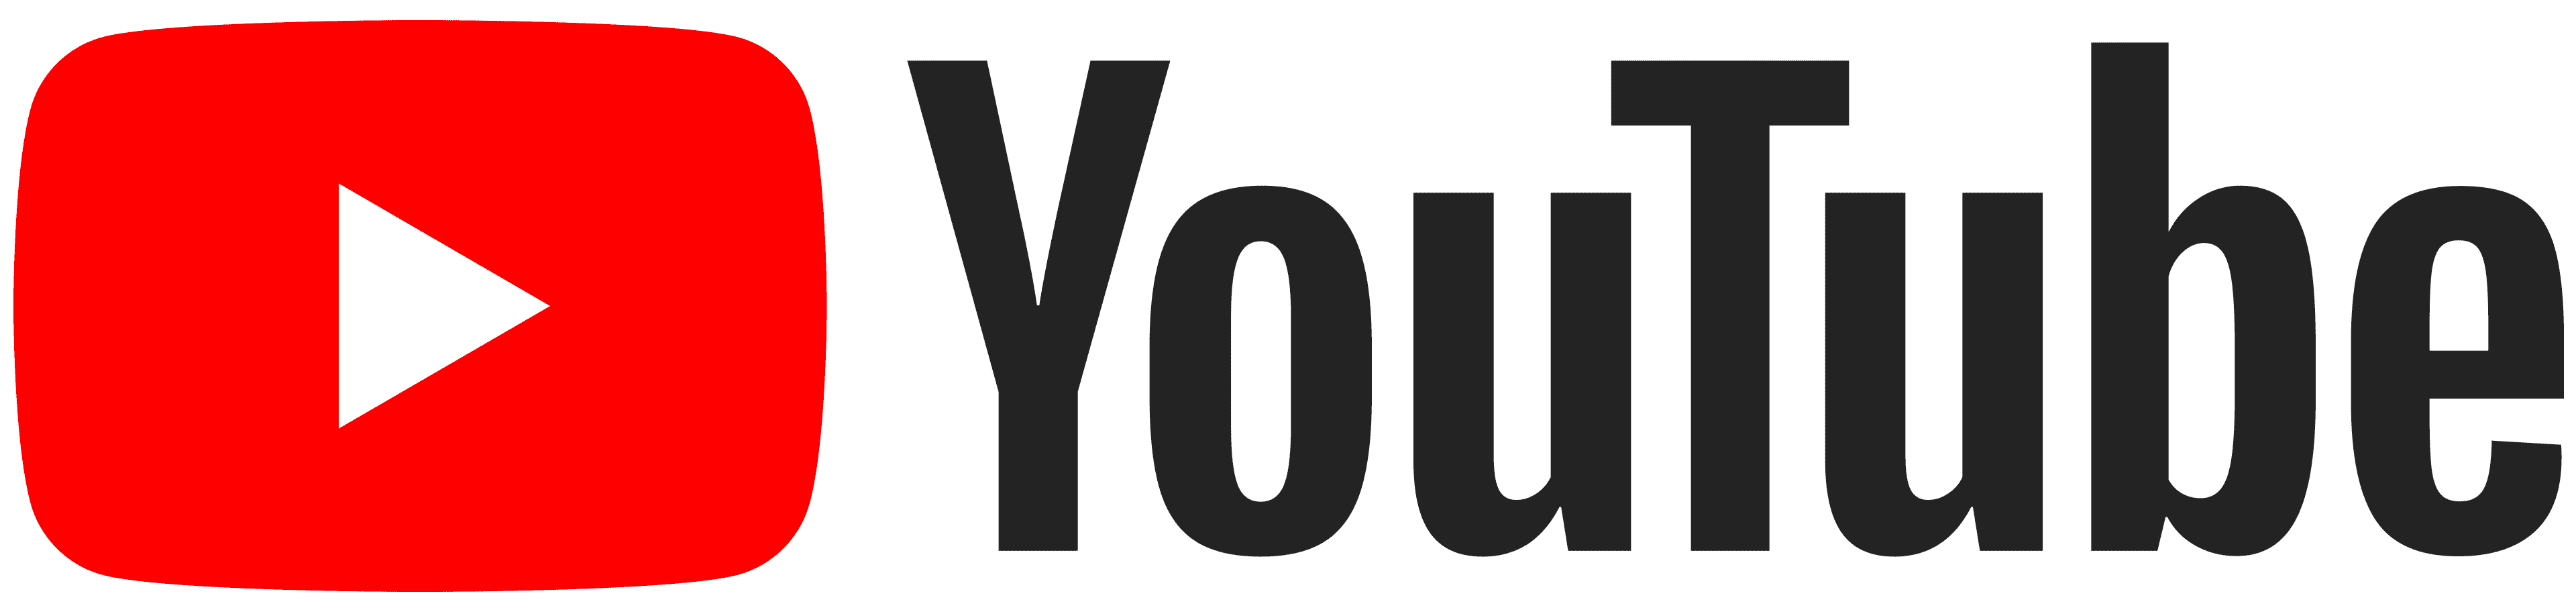 YouTube-logo_orizzontale